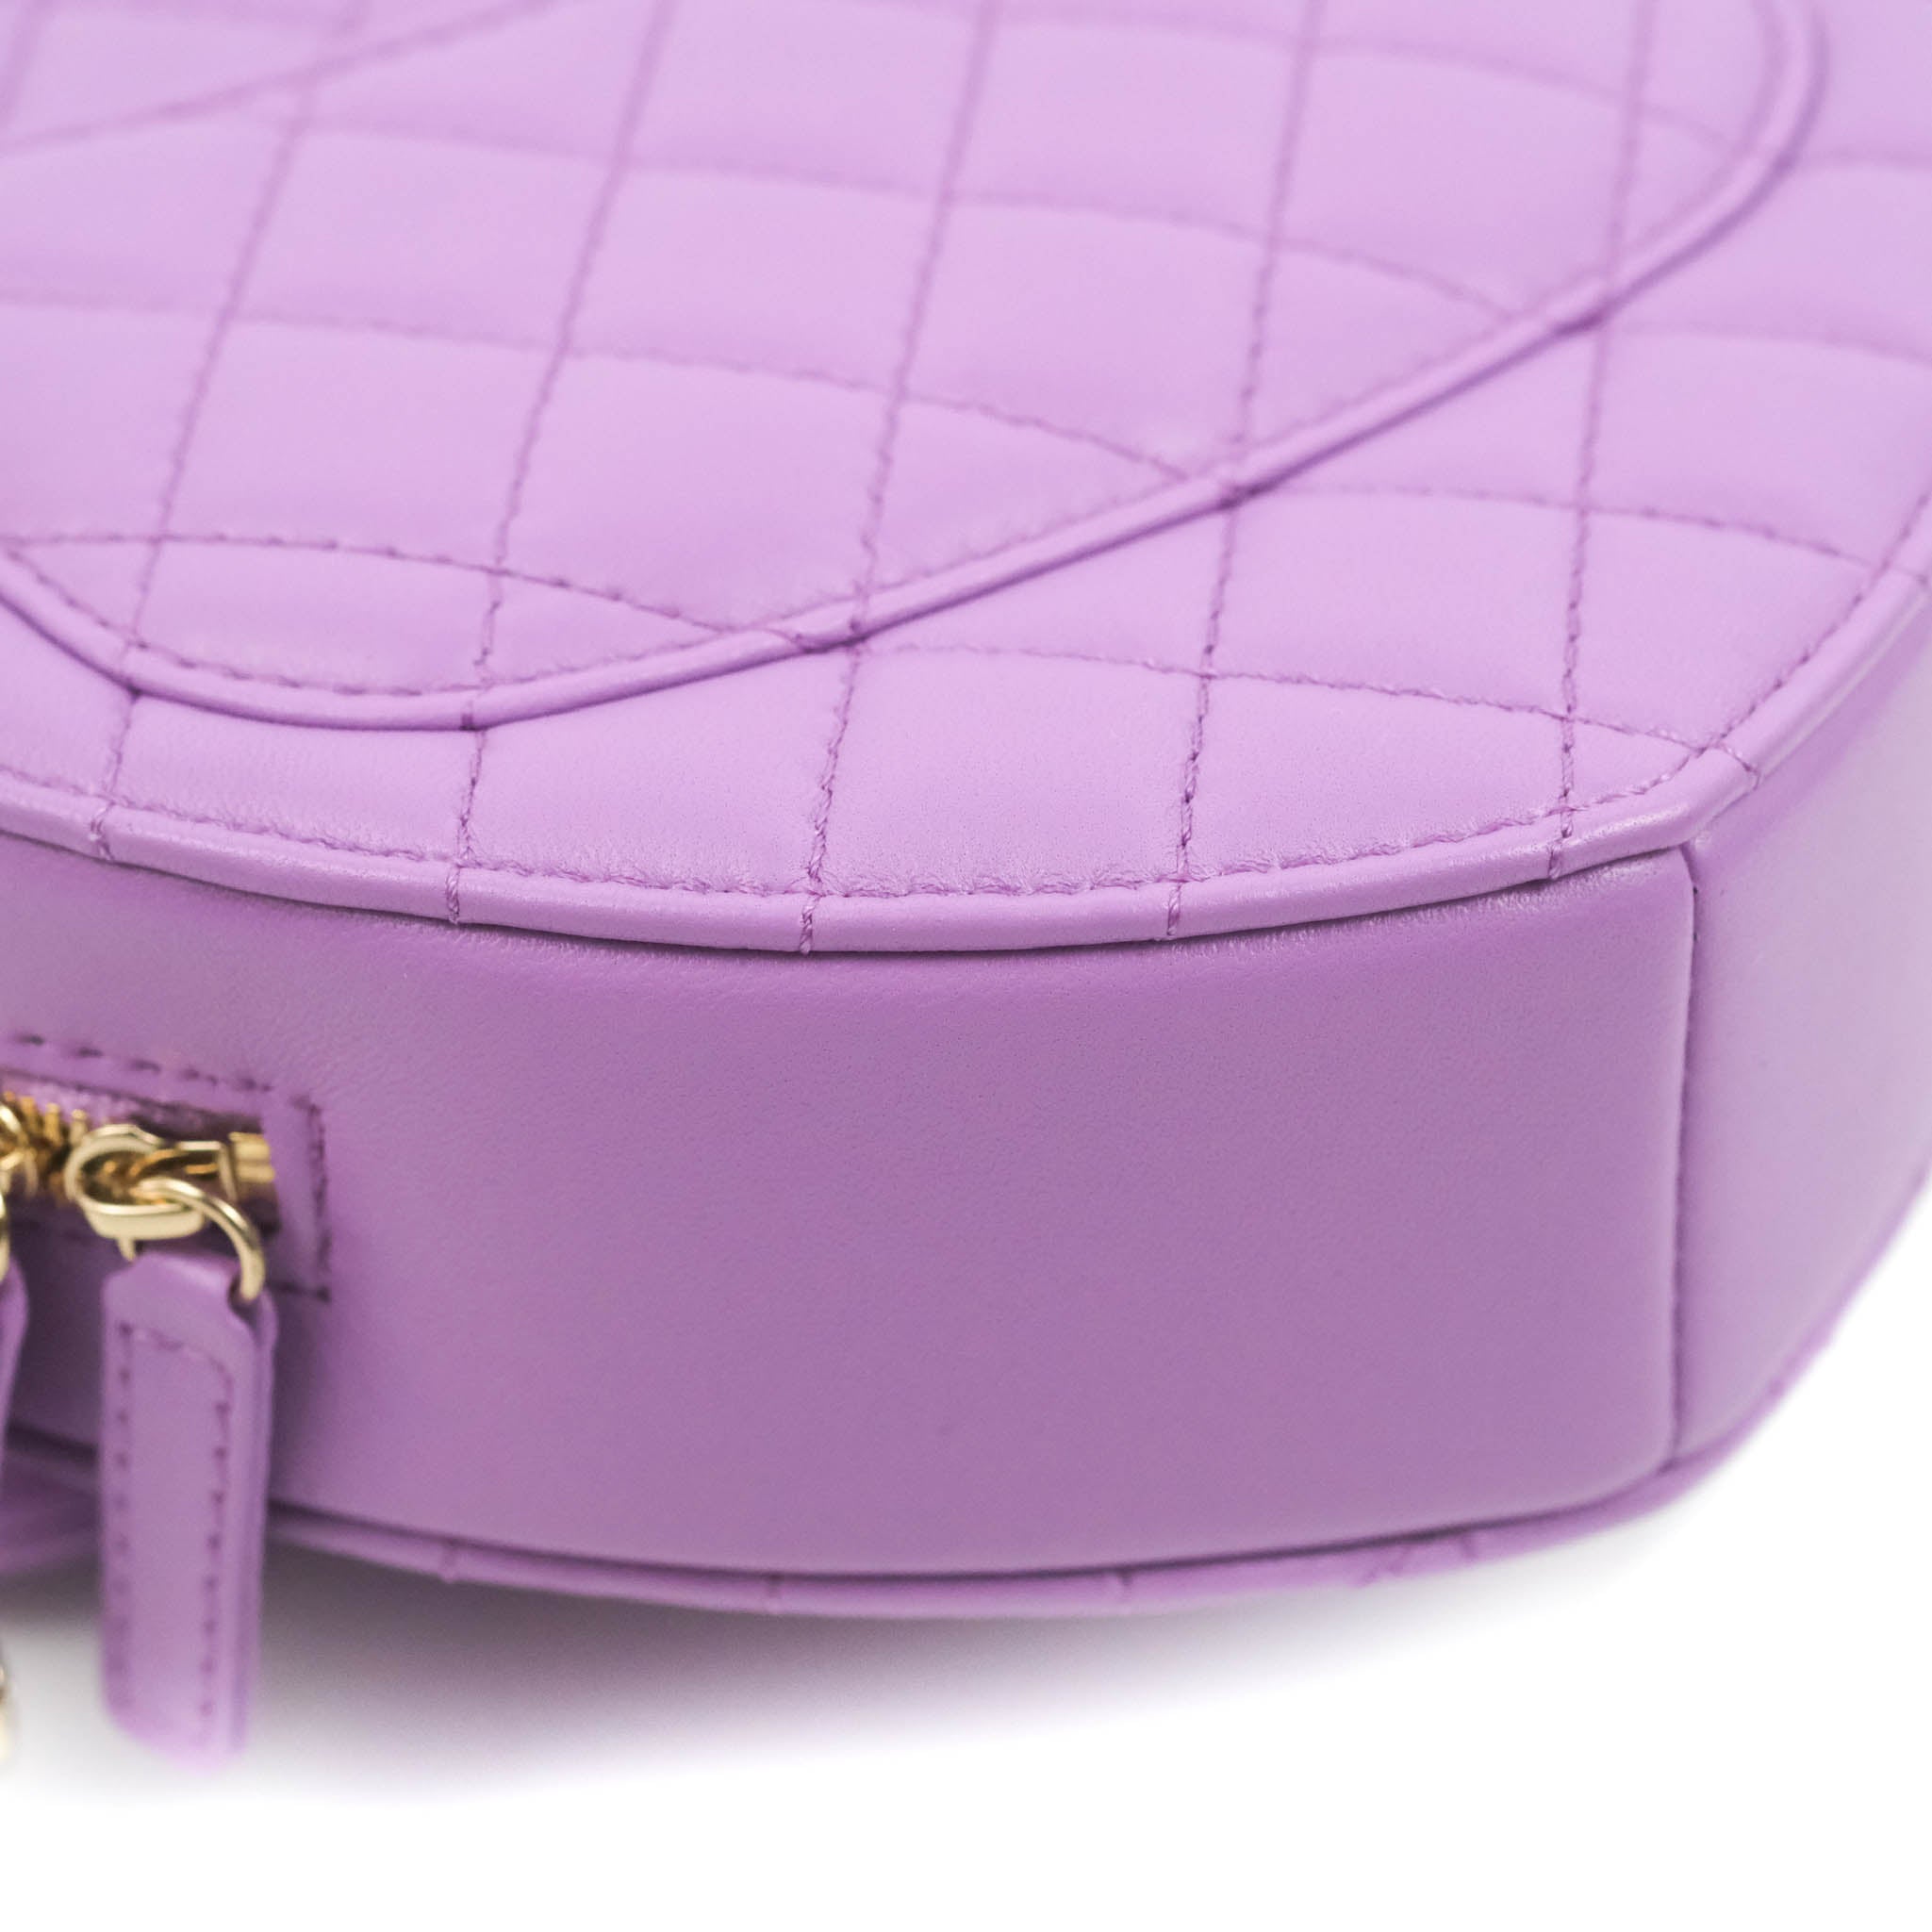 Chanel Heart Clutch With Chain 22S Purple Lambskin for Women